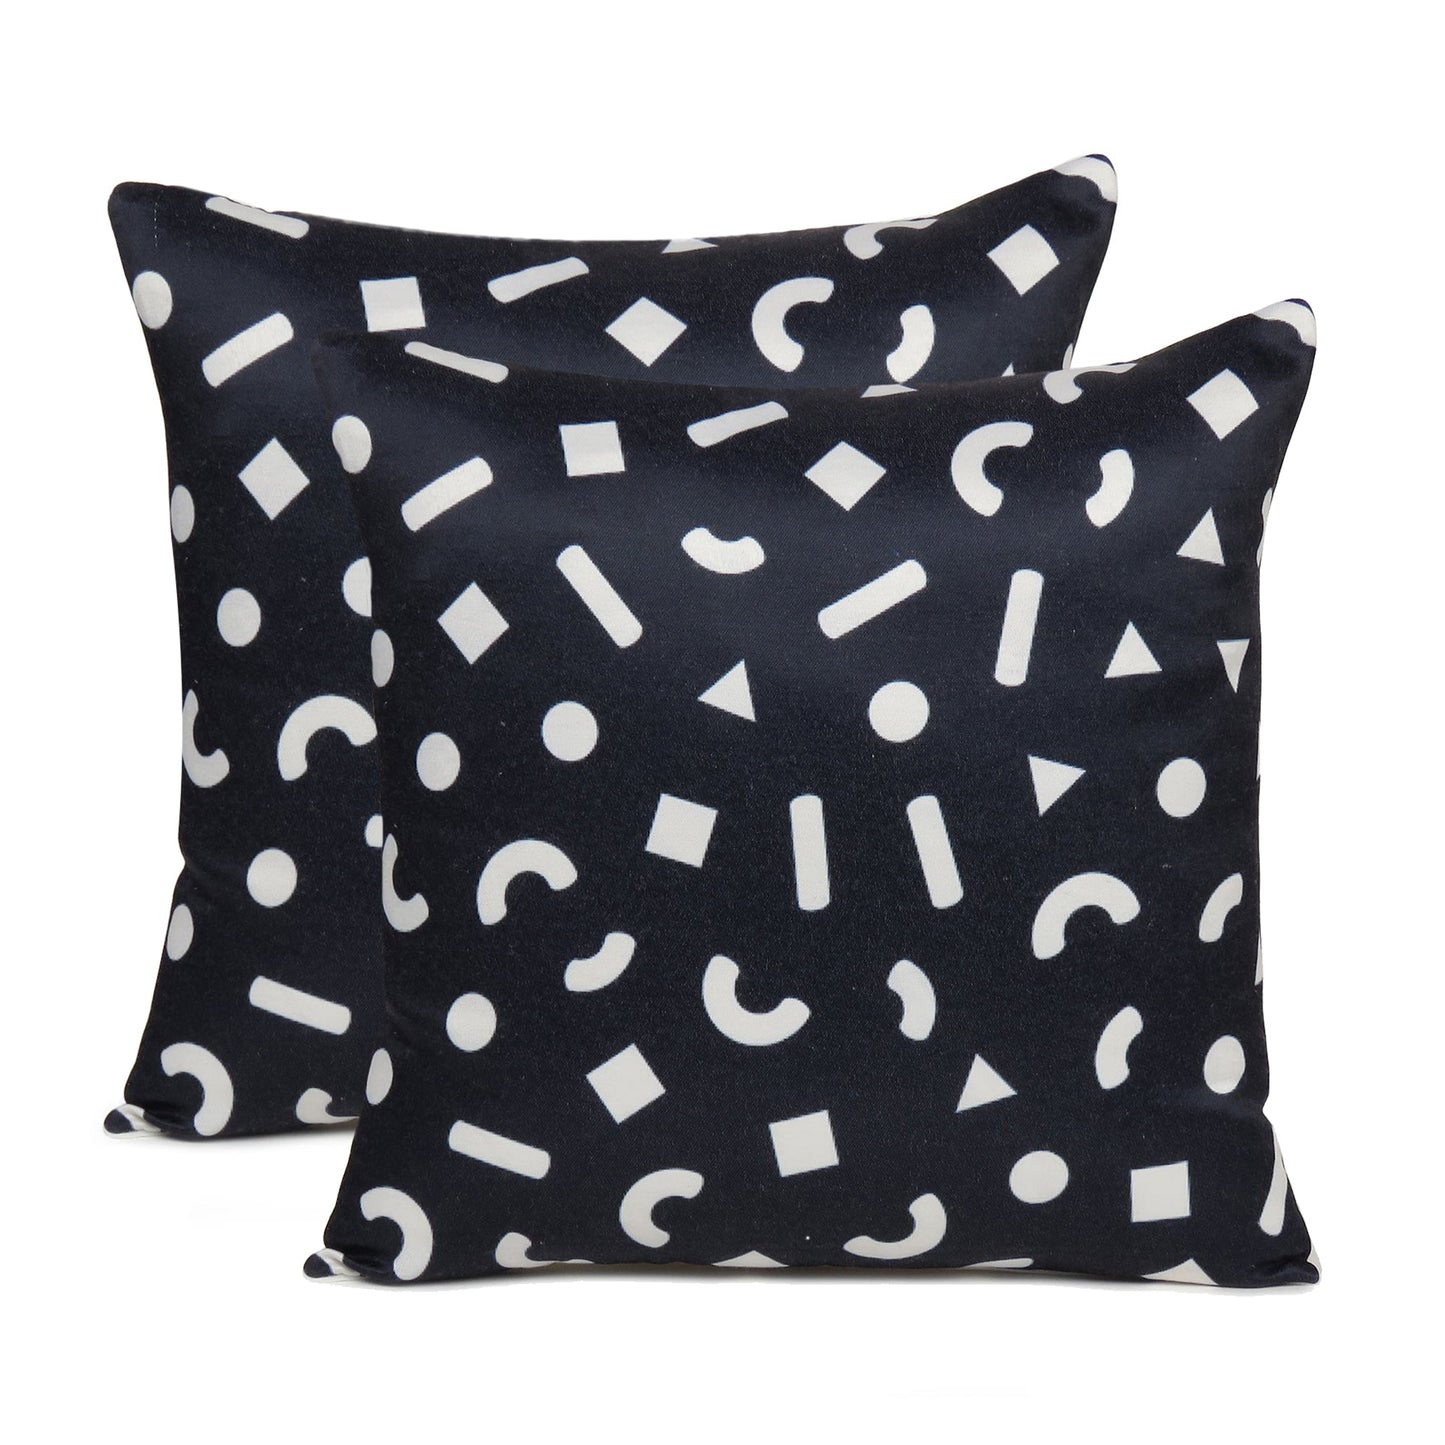 Black Geometric Print Cushion Cover in Set of 2